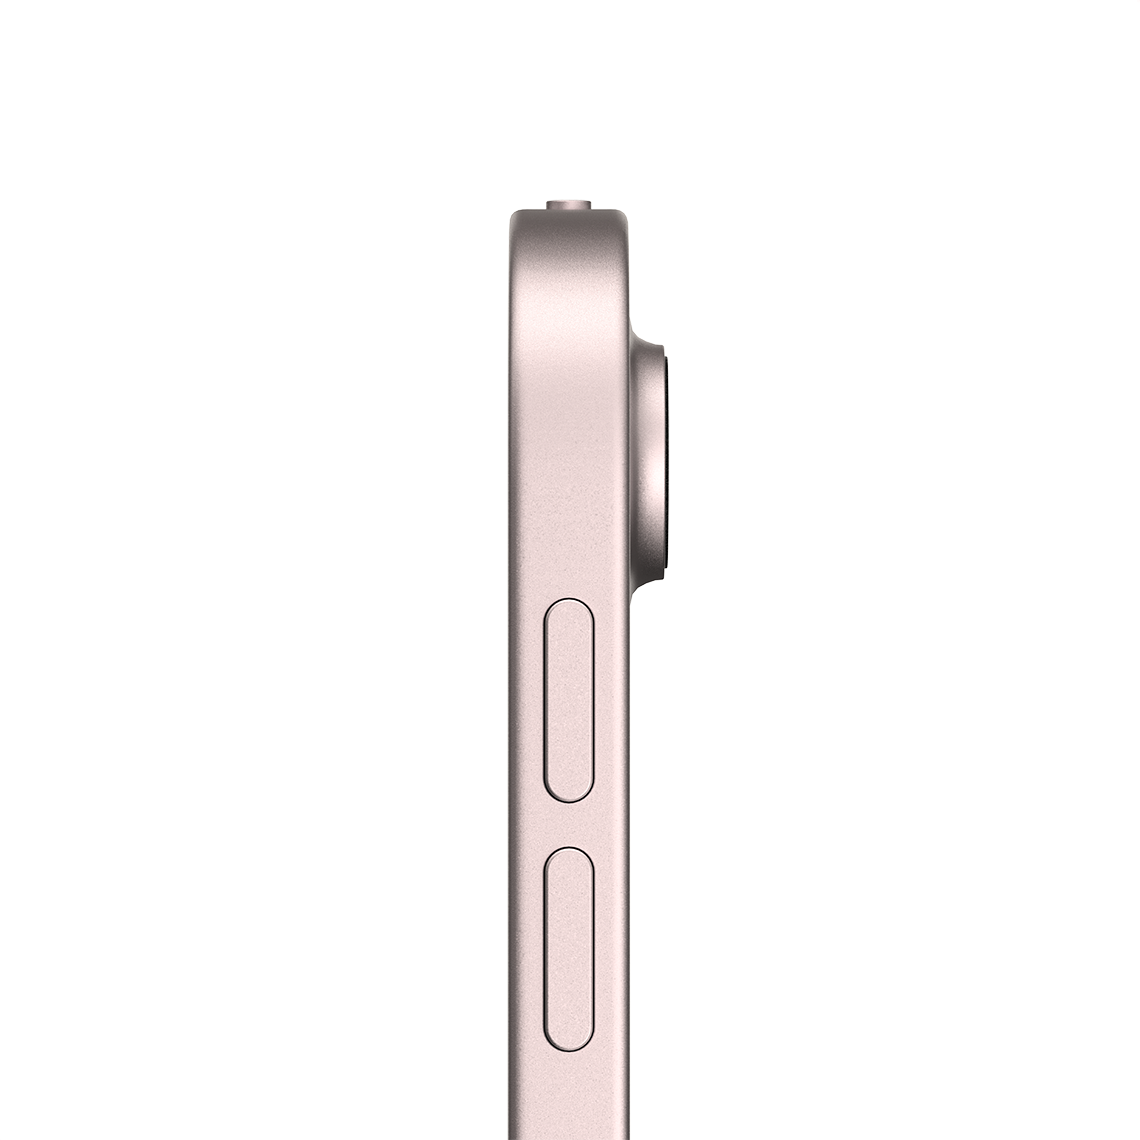 Apple iPad Air 10.9-inch 5th Generation - Pink - 64GB, Wi-Fi, Grade A